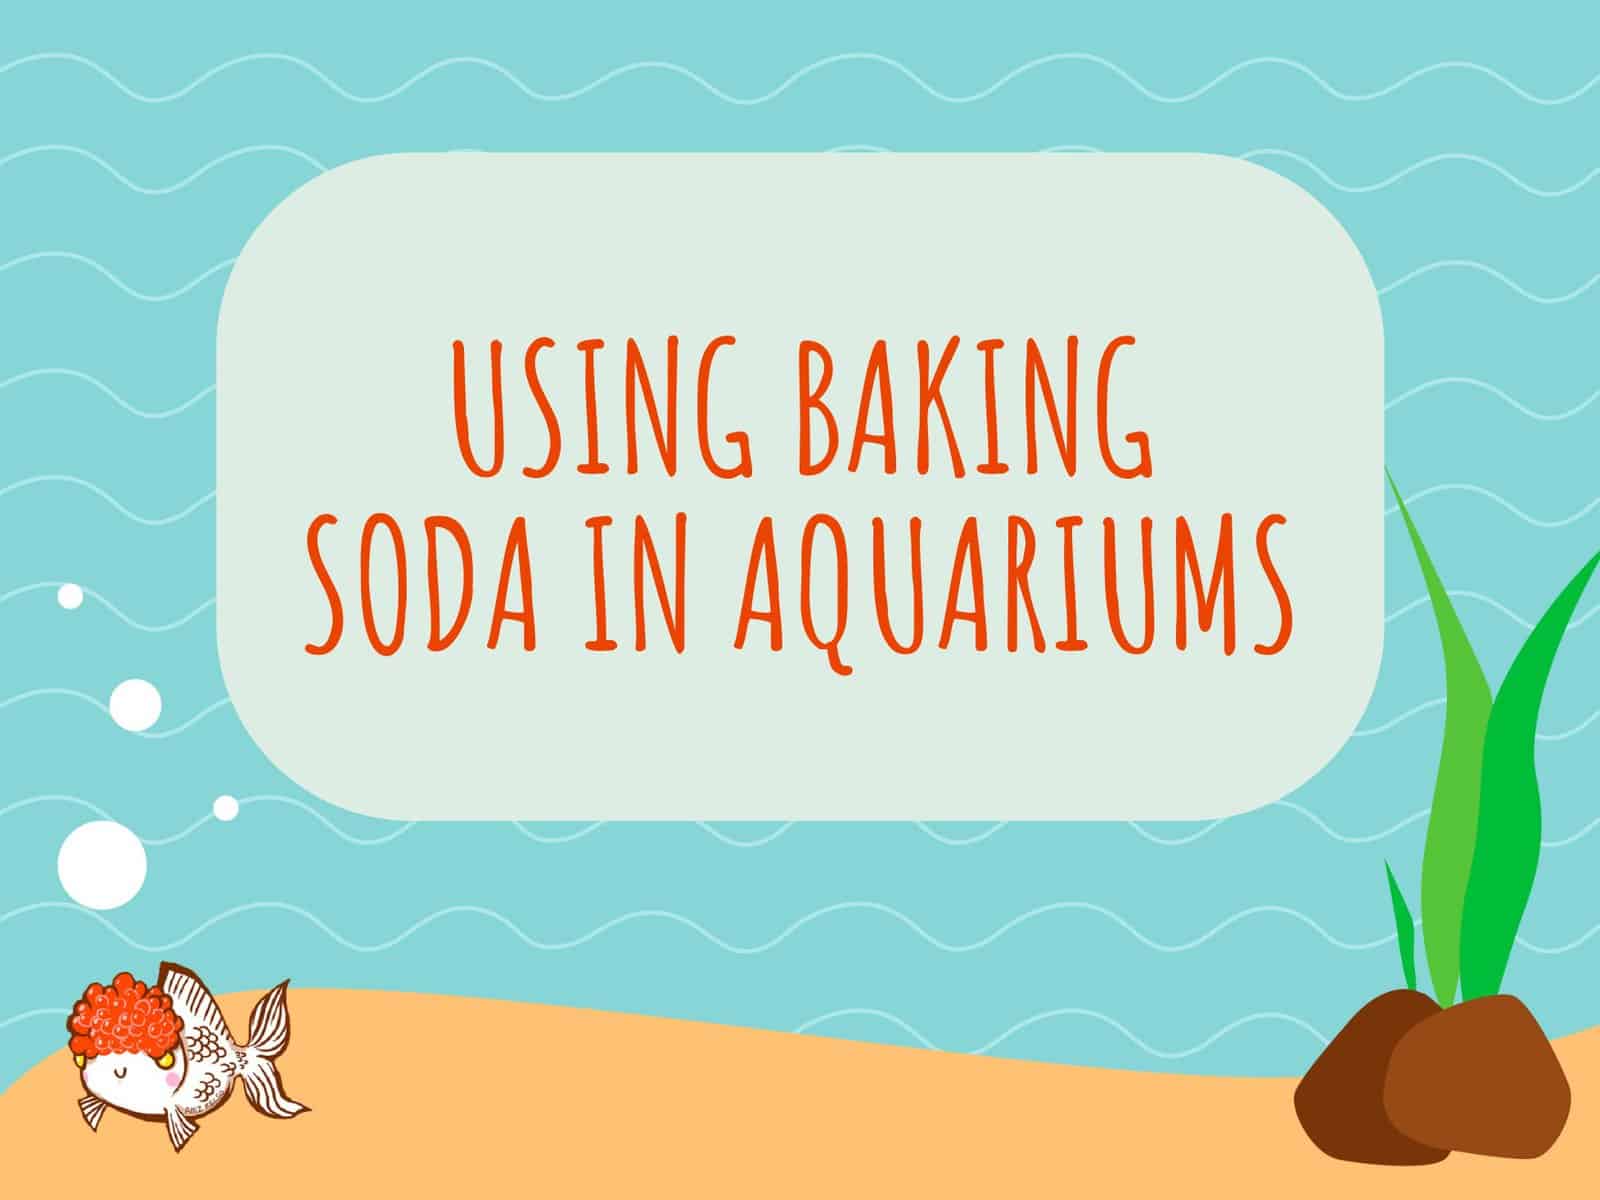 Baking Soda in Aquarium